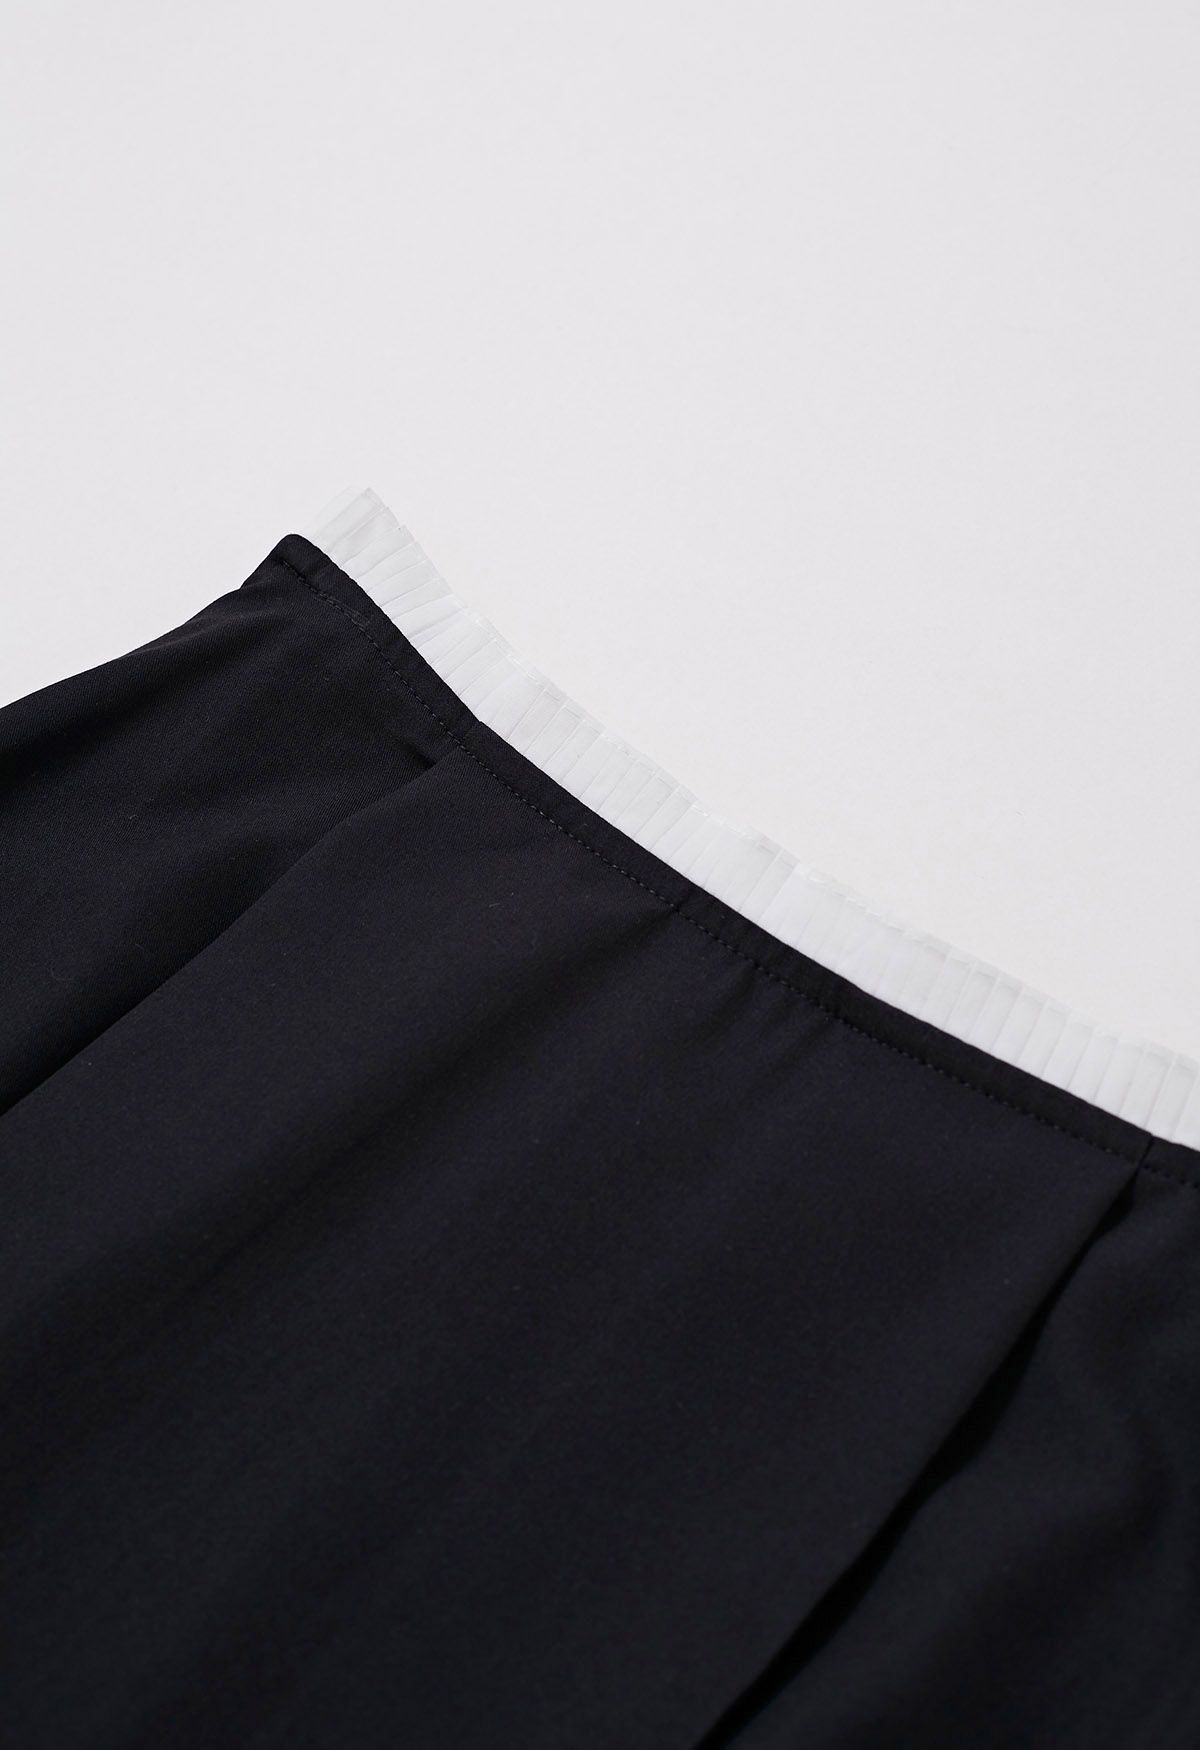 Falda larga con cinturilla plisada en contraste en negro